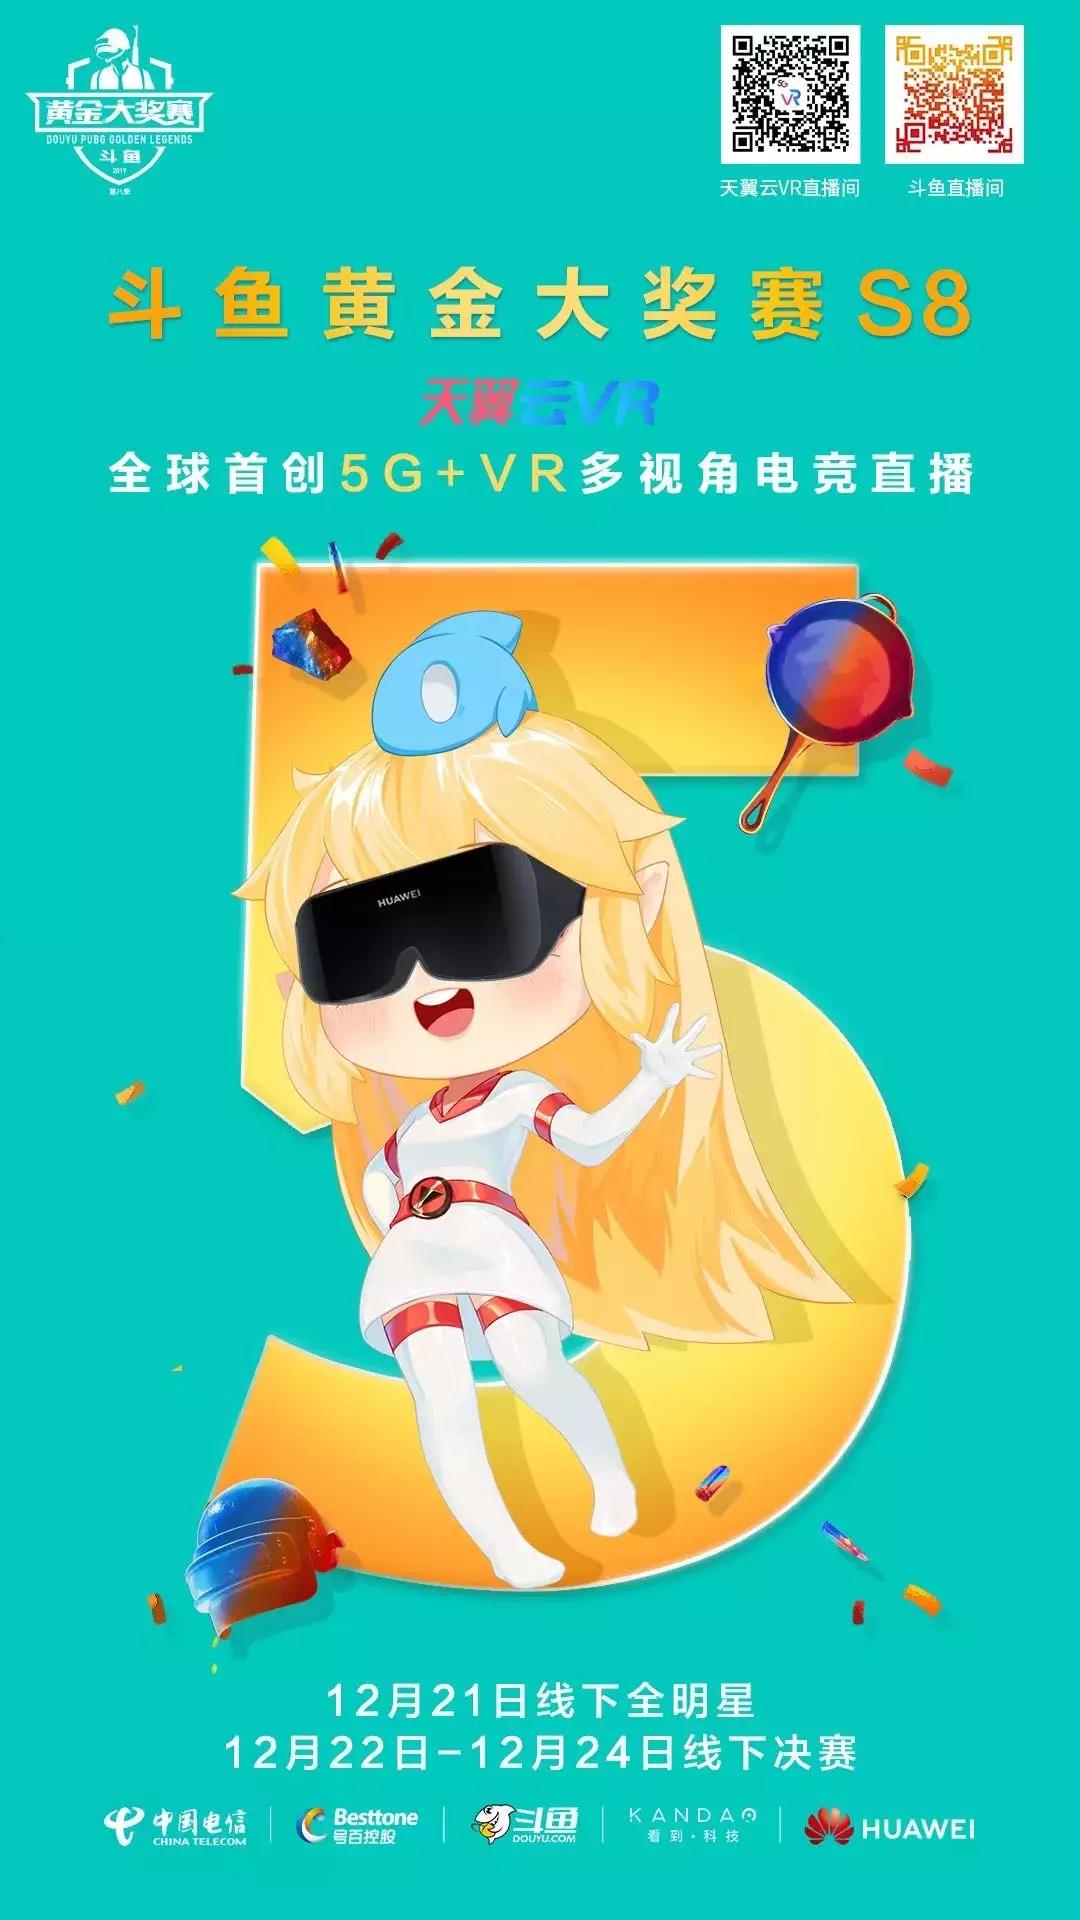 5G 手机 VR 广告：数字化时代的融合与创新体验  第4张